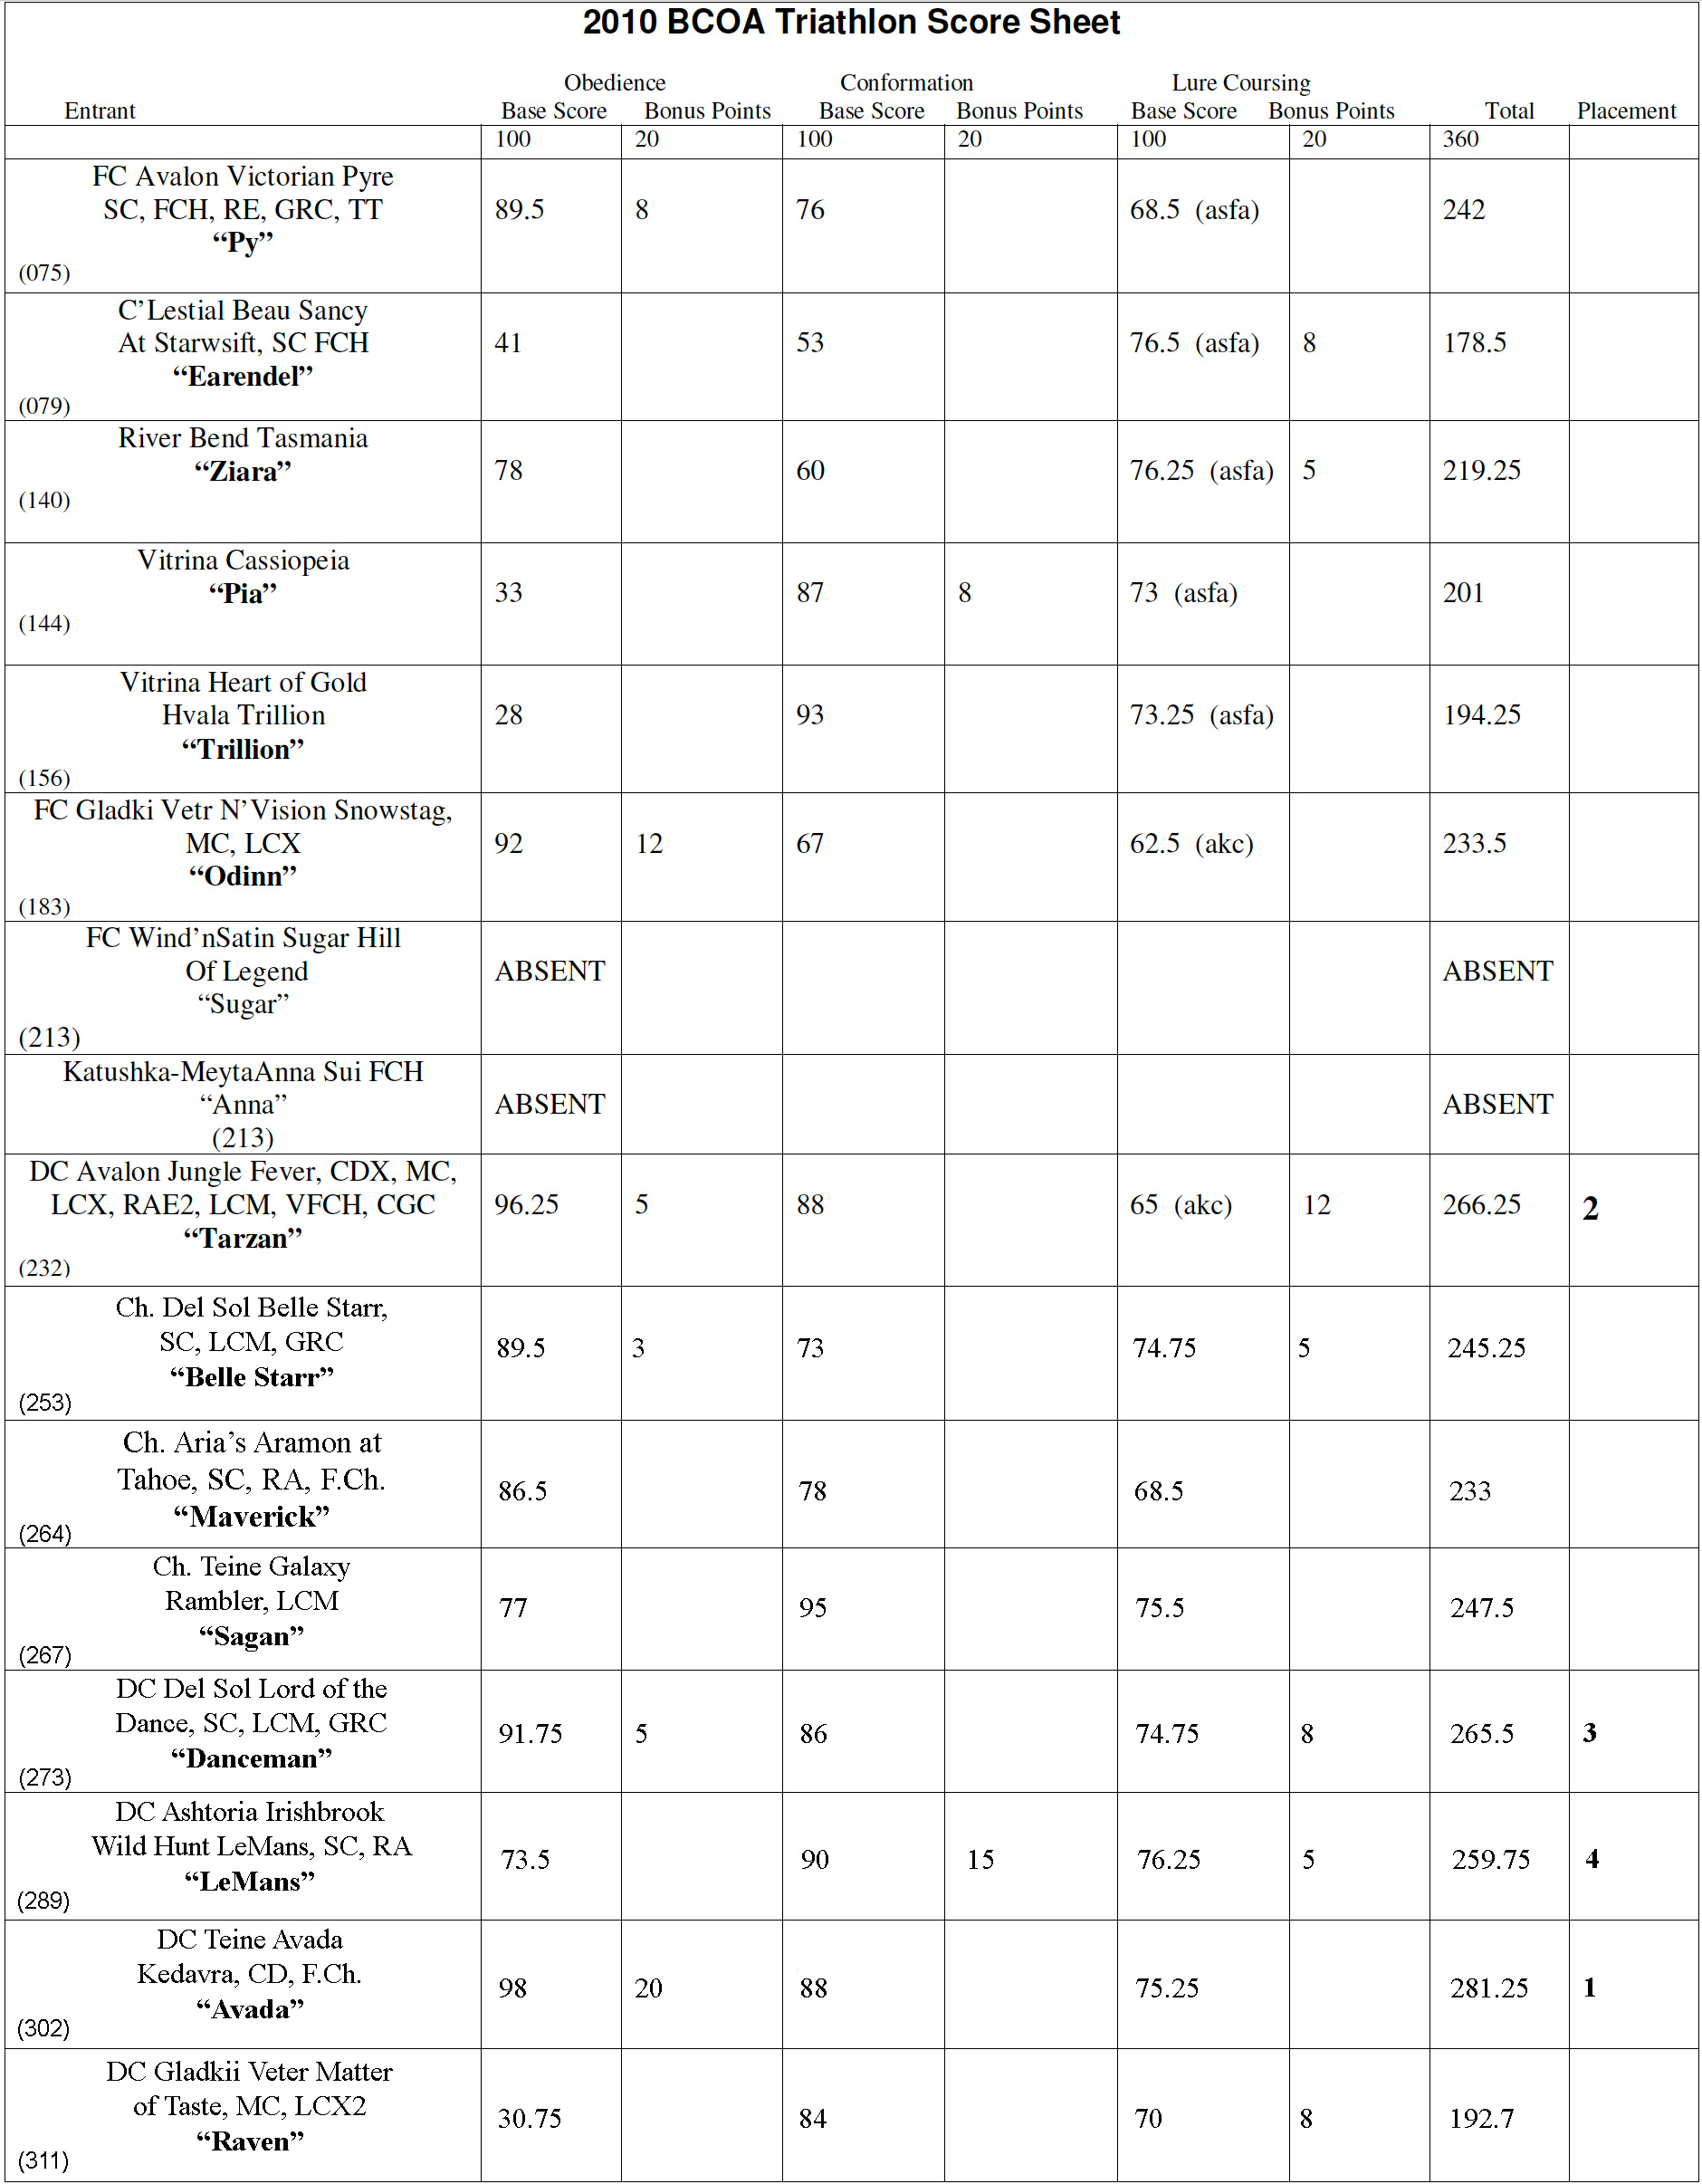 2010 Triathlon Scores